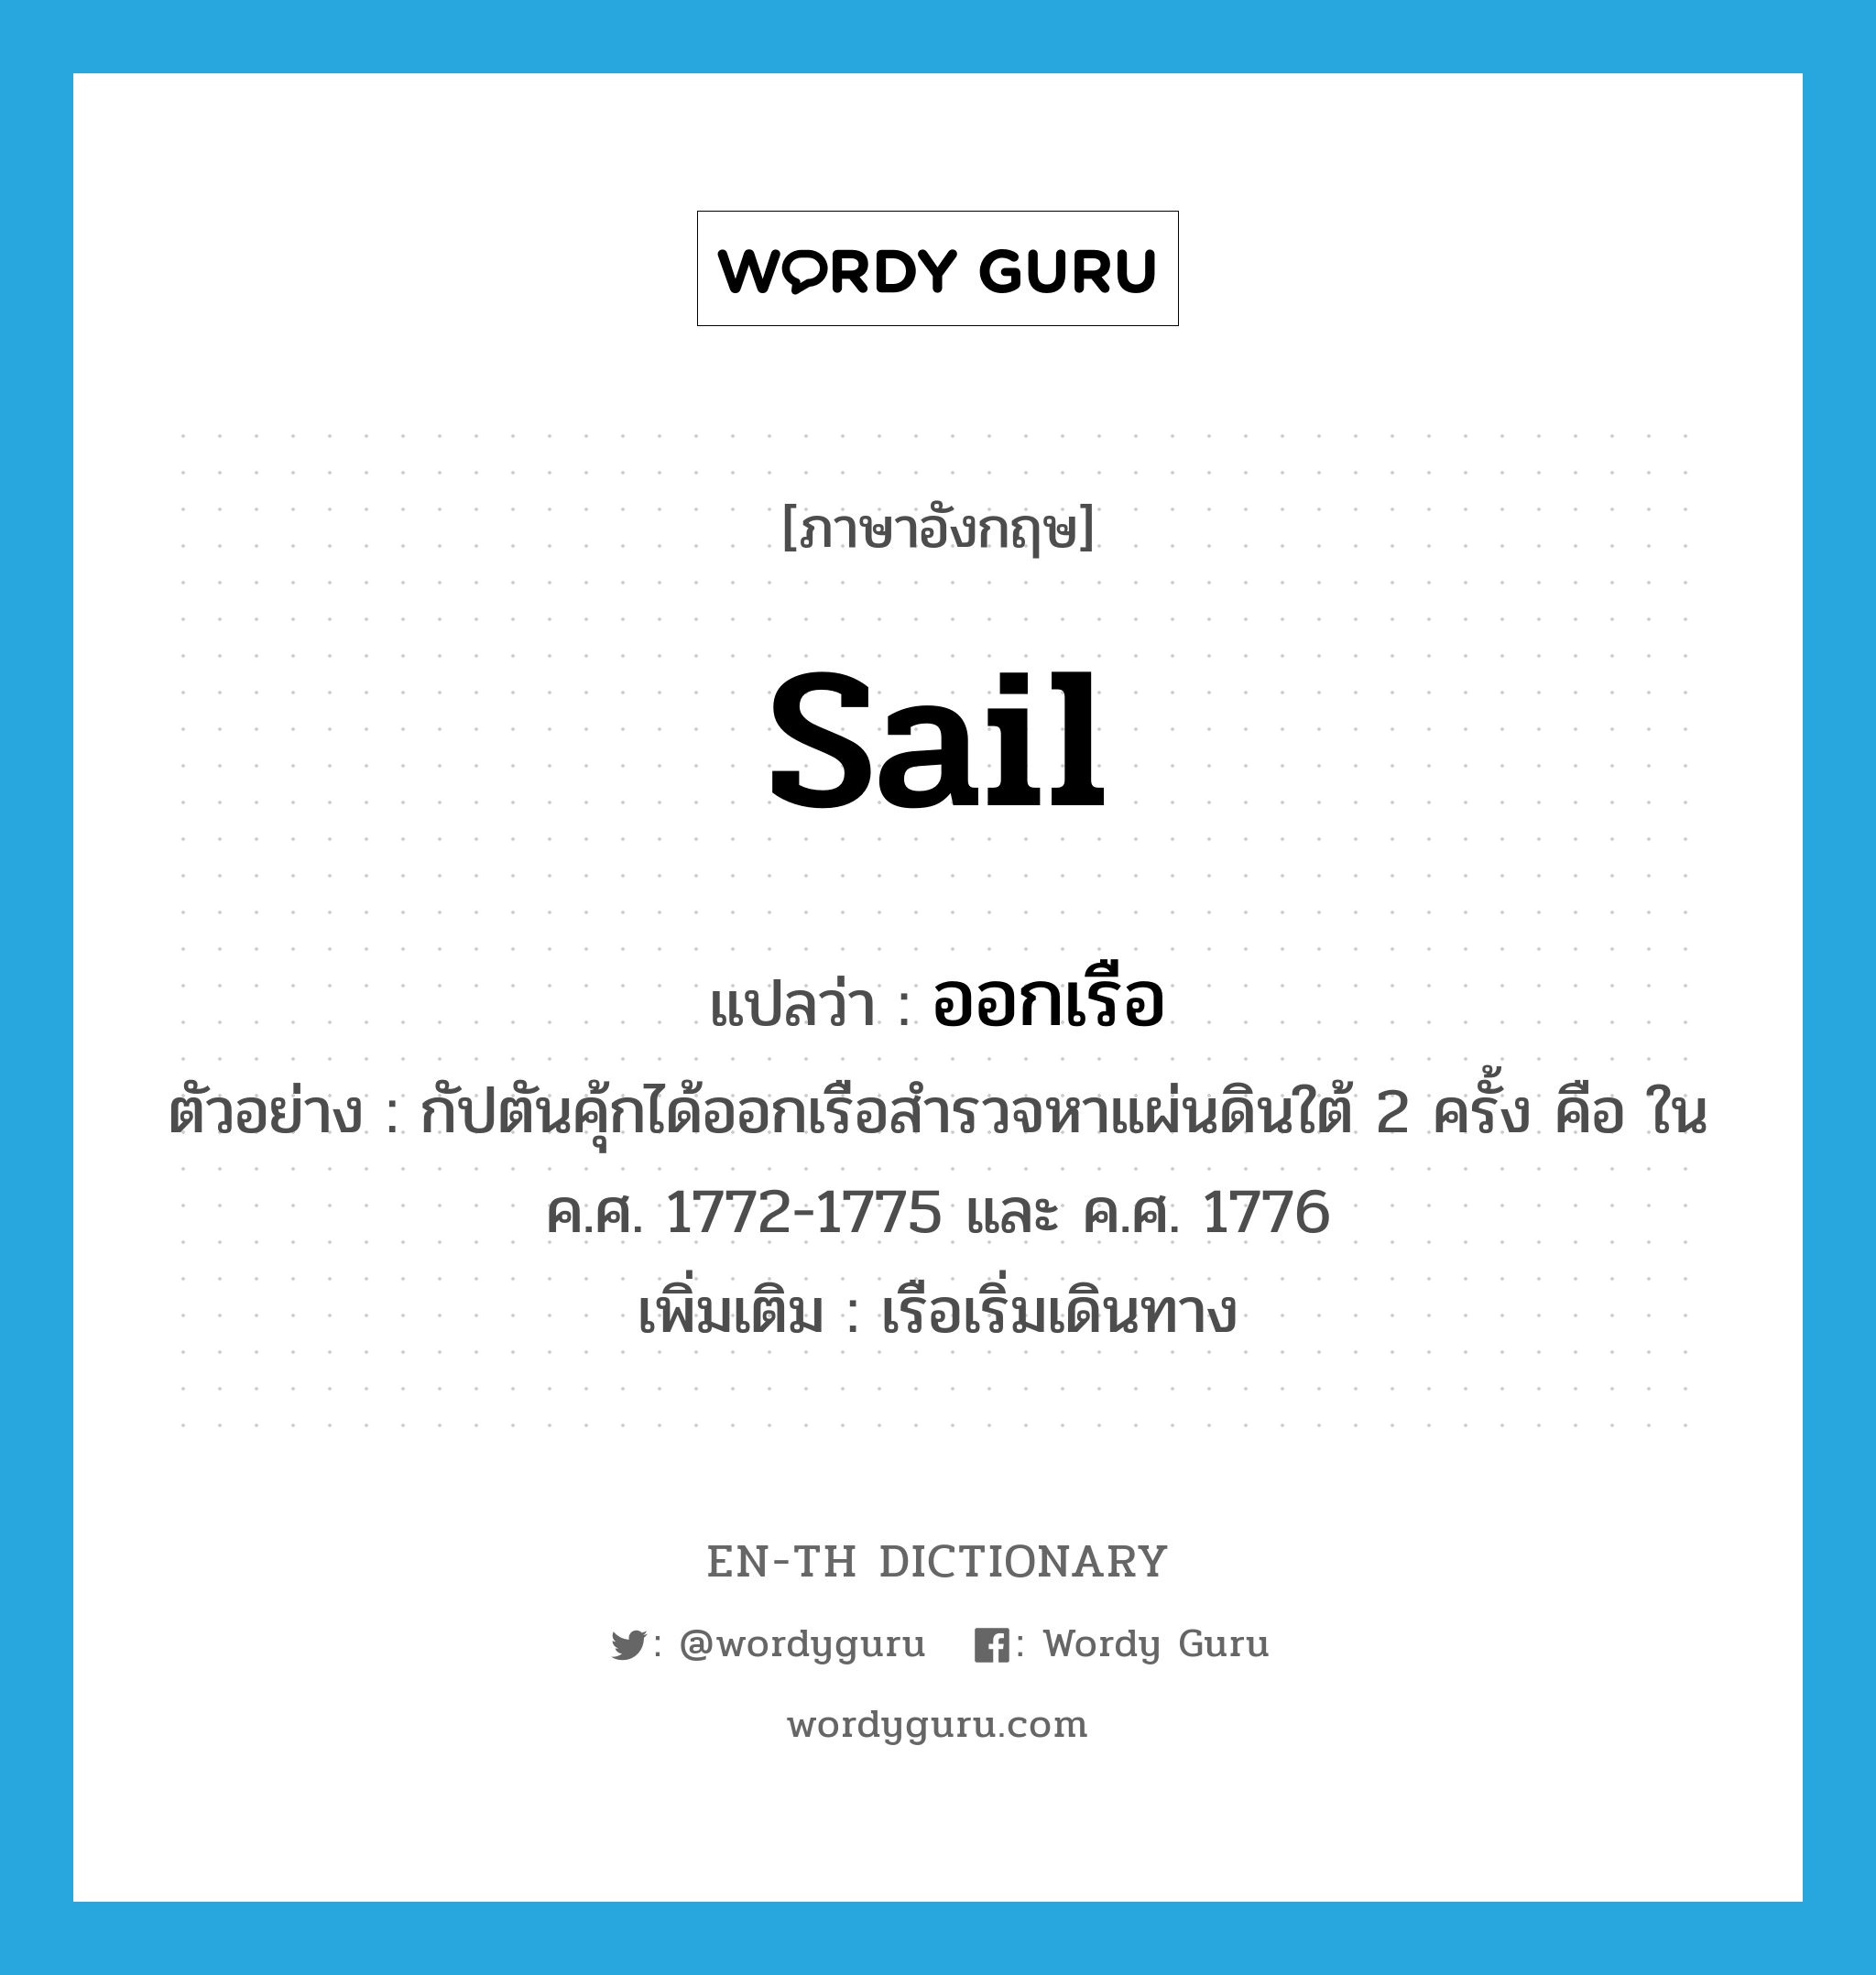 sail แปลว่า?, คำศัพท์ภาษาอังกฤษ sail แปลว่า ออกเรือ ประเภท V ตัวอย่าง กัปตันคุ้กได้ออกเรือสำรวจหาแผ่นดินใต้ 2 ครั้ง คือ ใน ค.ศ. 1772-1775 และ ค.ศ. 1776 เพิ่มเติม เรือเริ่มเดินทาง หมวด V